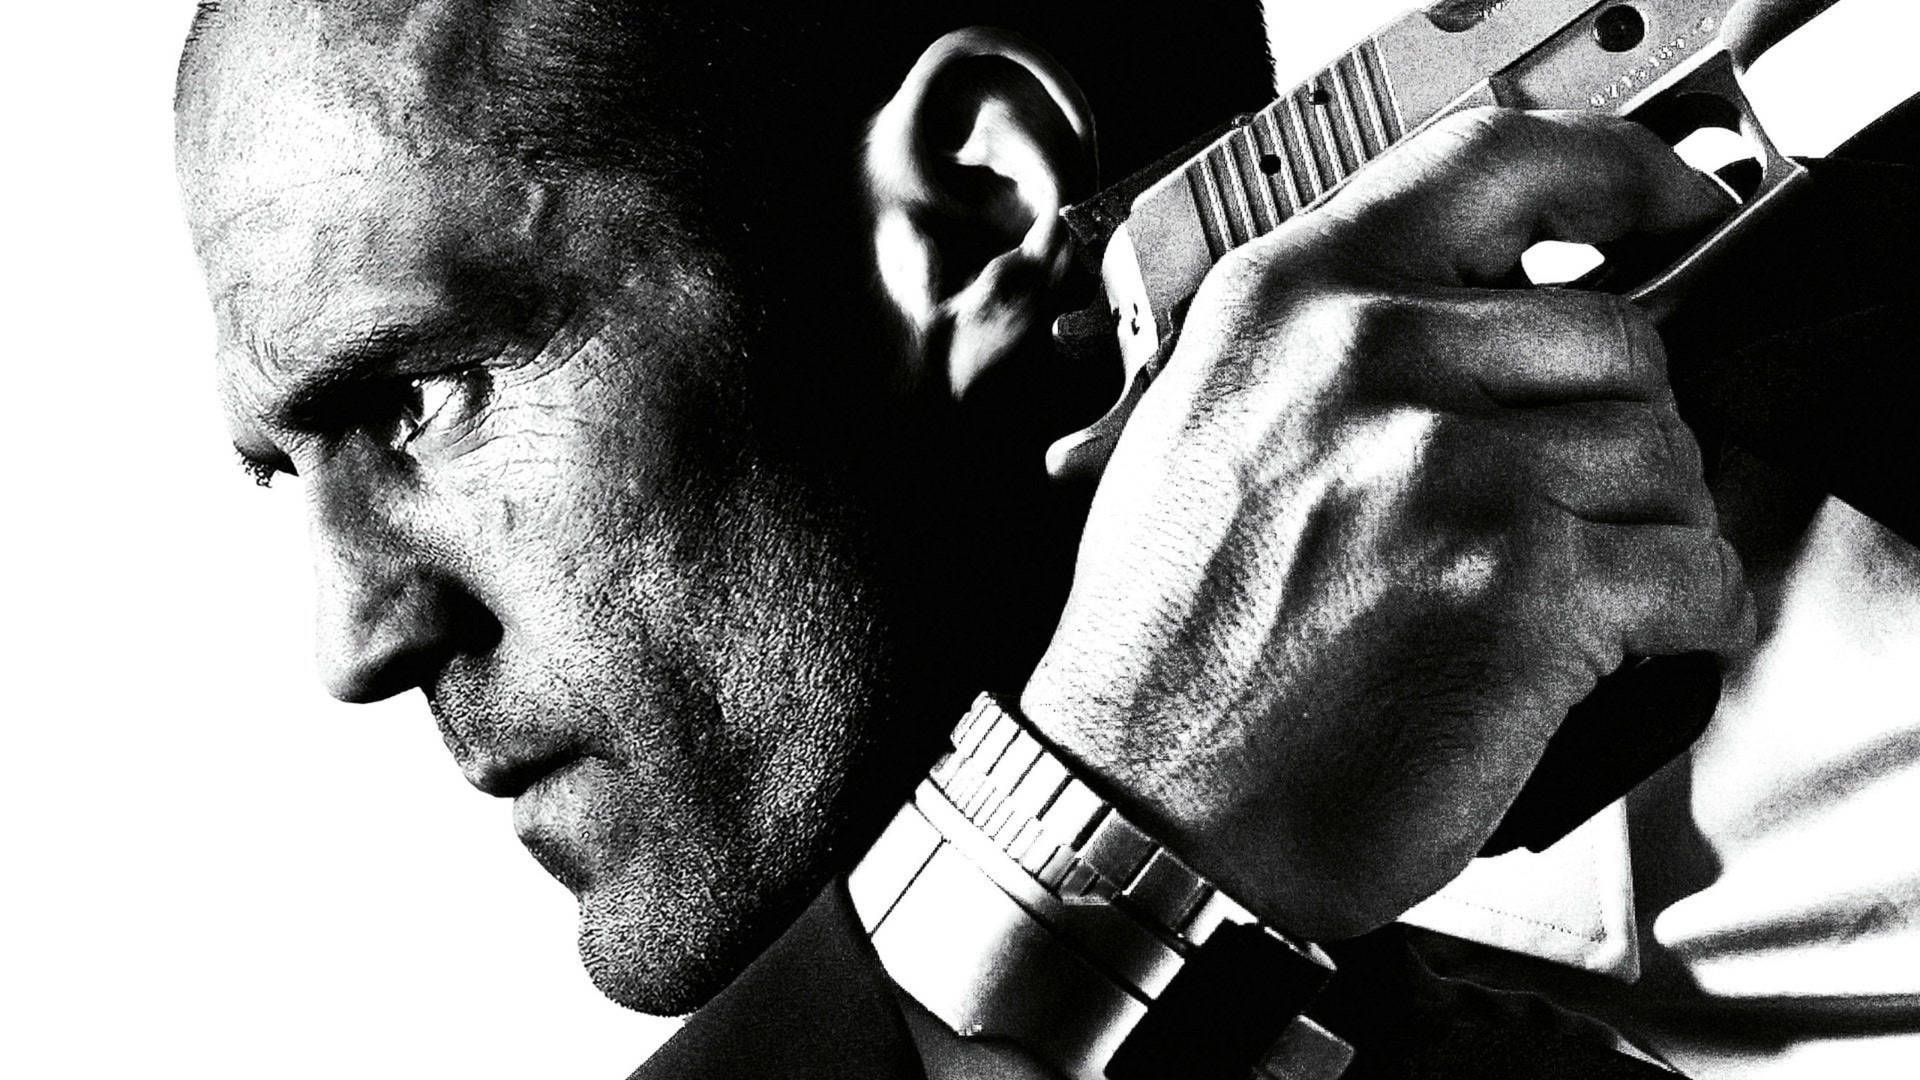 Jason Statham With Gun Monochrome Background